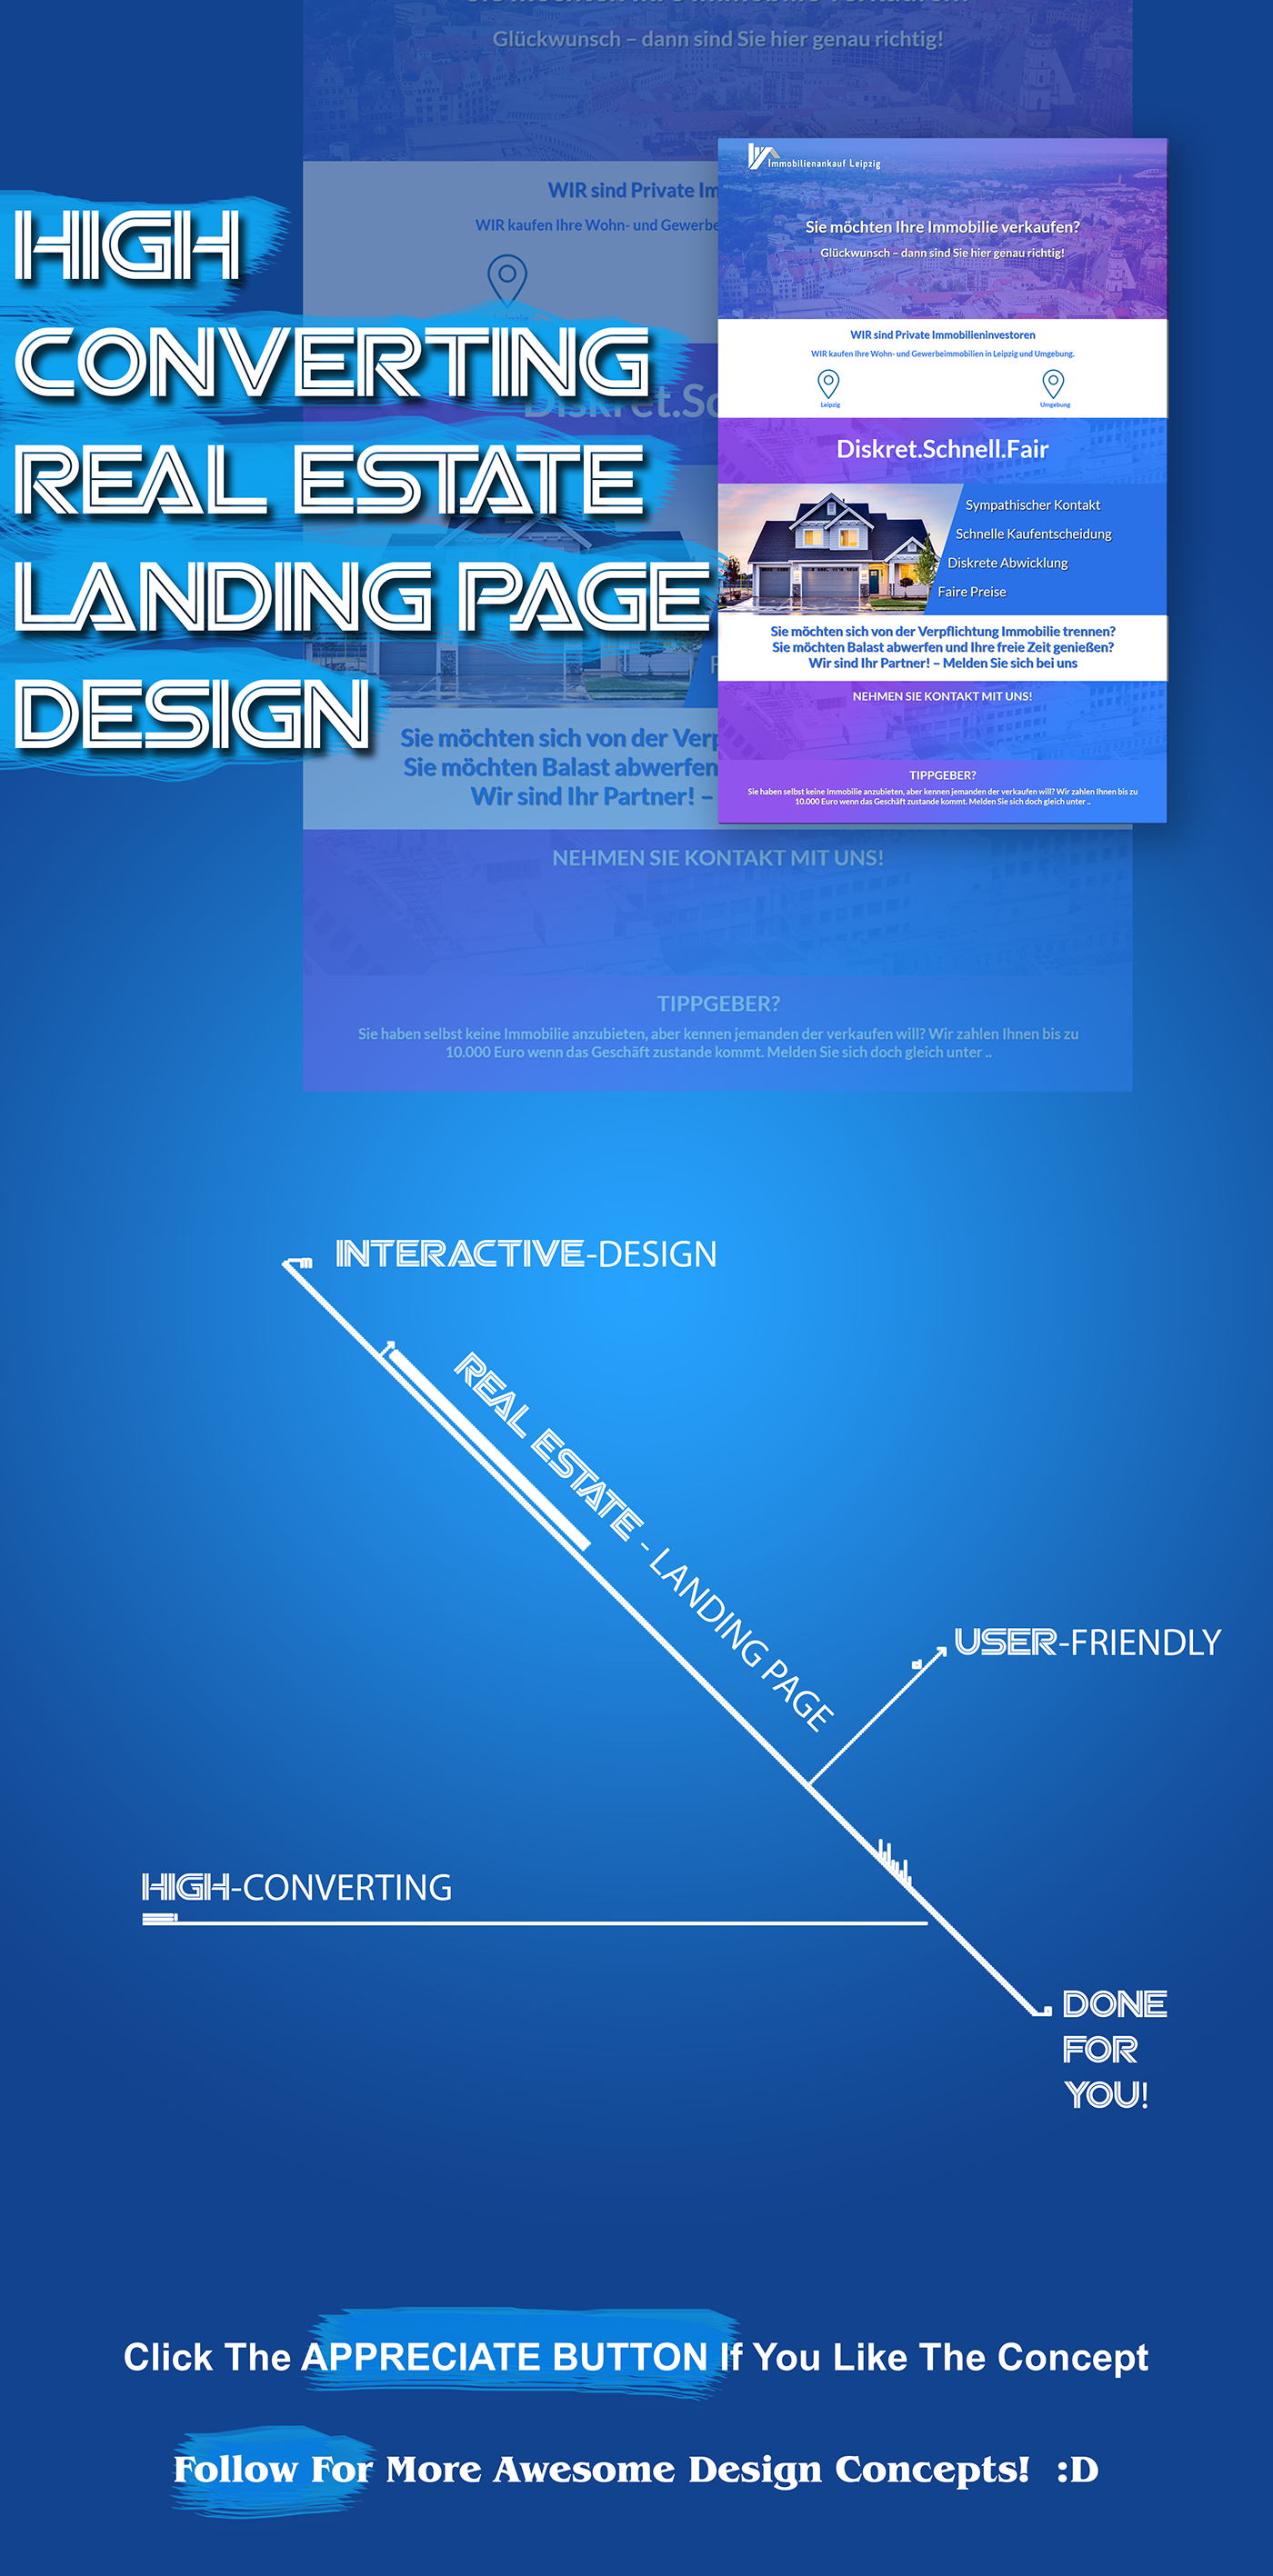 real estate landing page Web Design  mohammad ali nijhoom nijhoom graphic design  Mockup perspective mockup Web Template Web designer